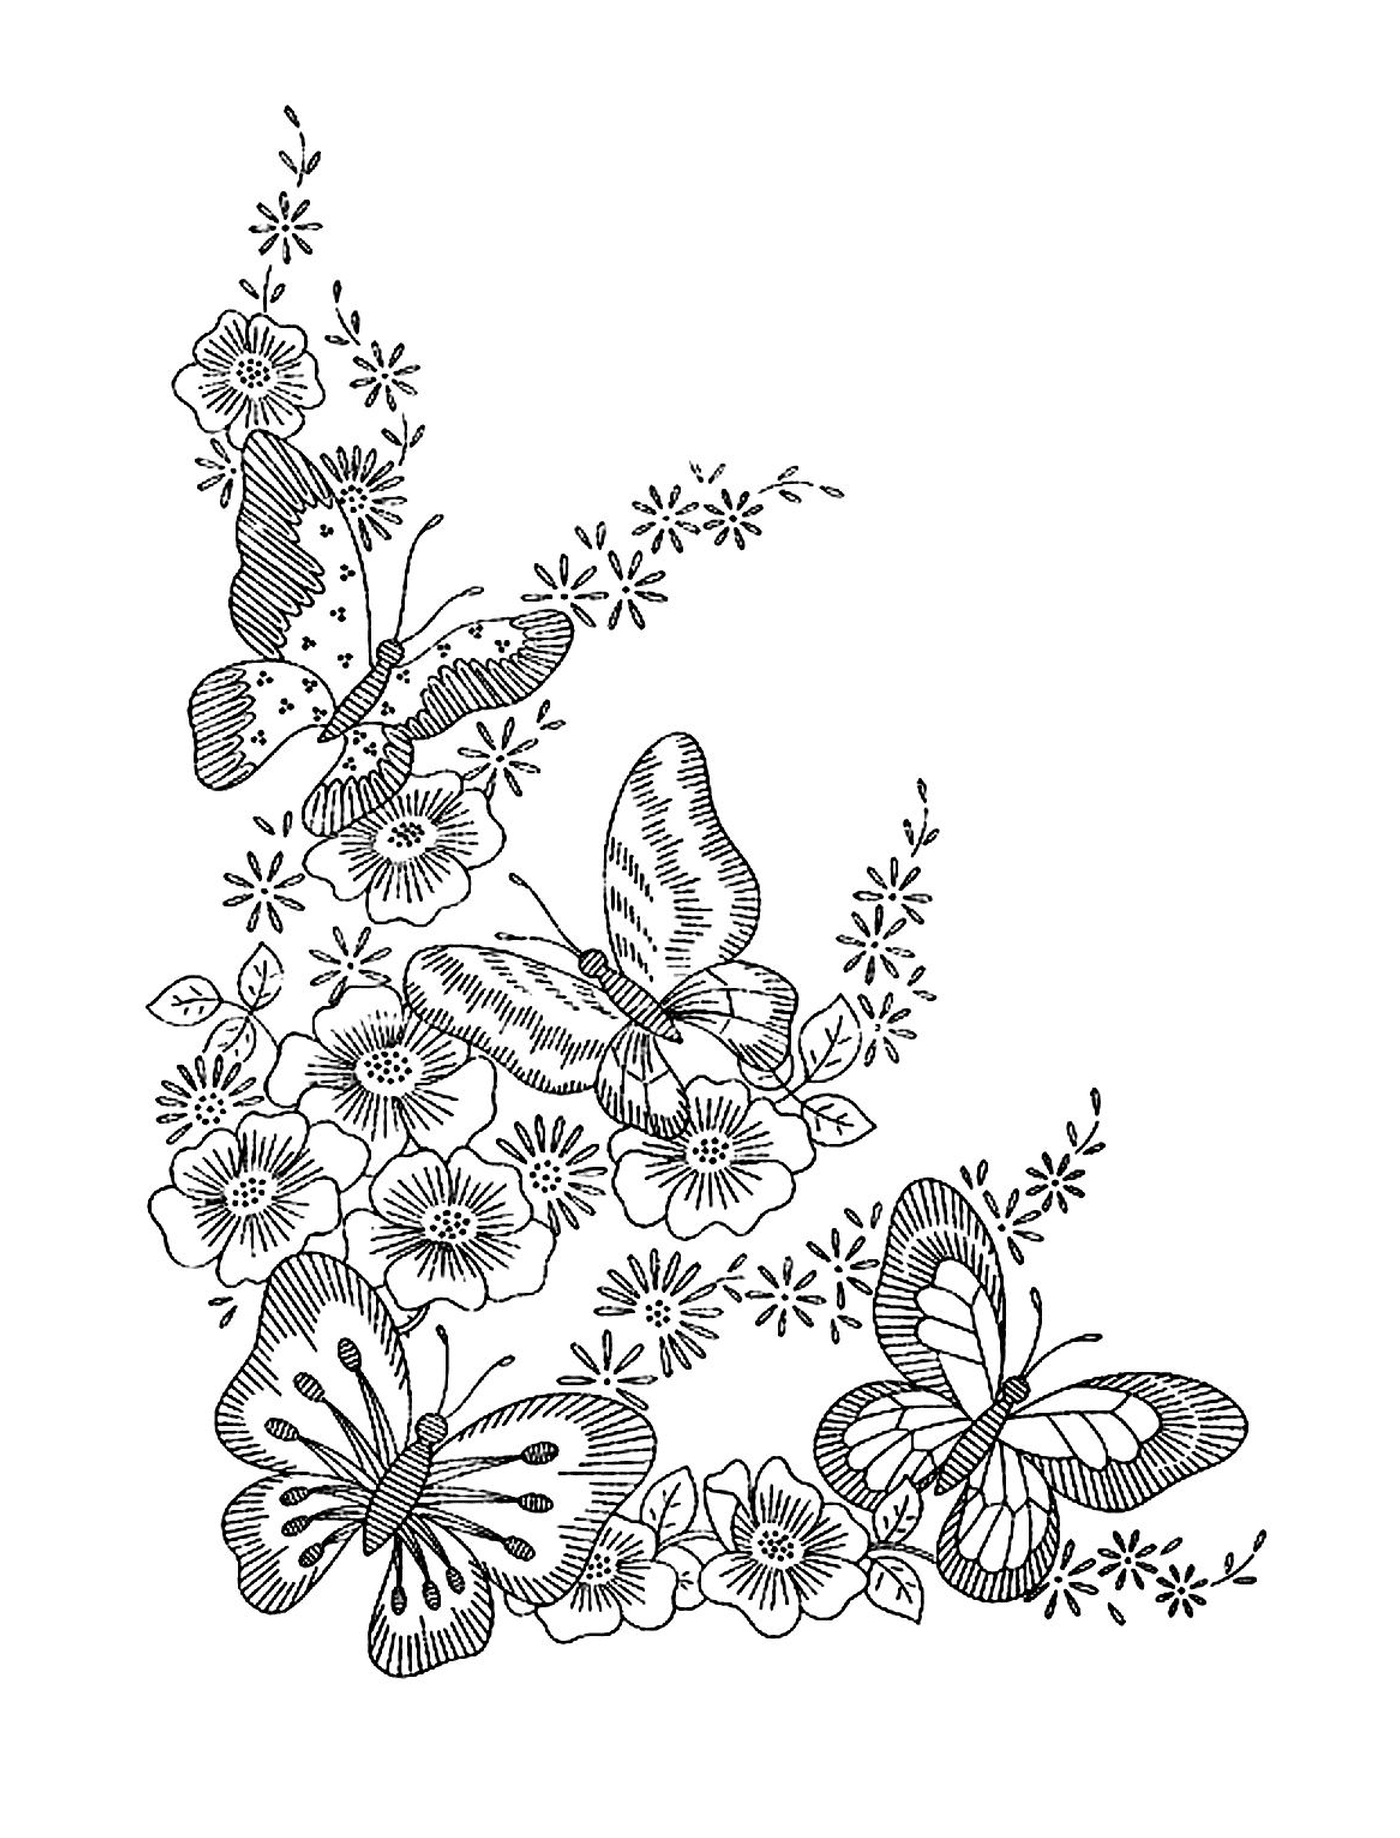  蝴蝶和美丽的花朵 